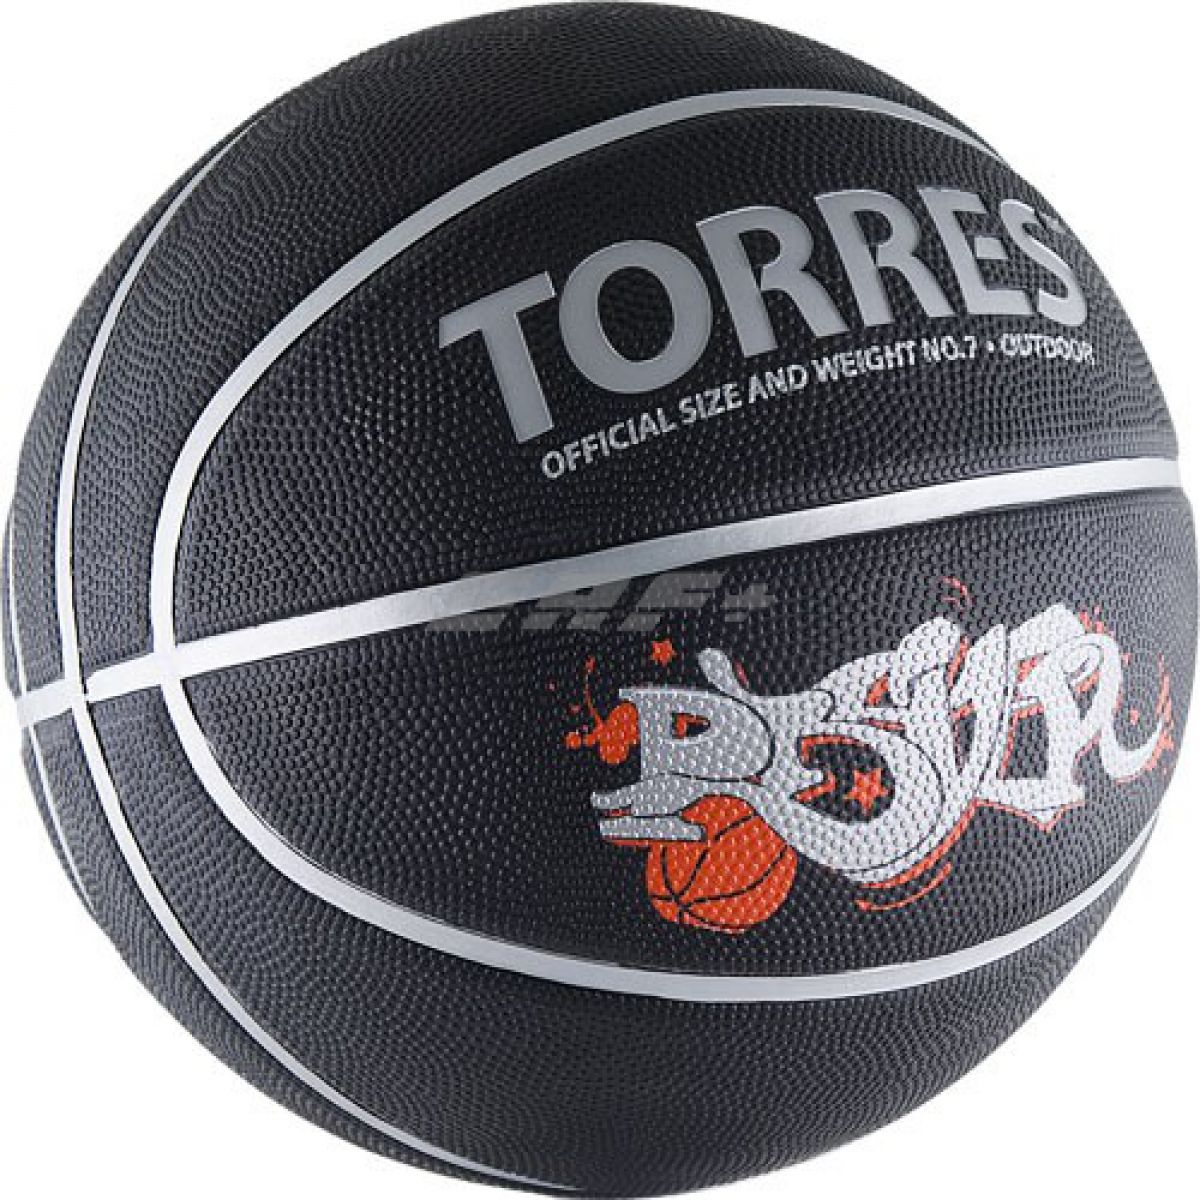 Мяч баскетбольный TORRES Prayer